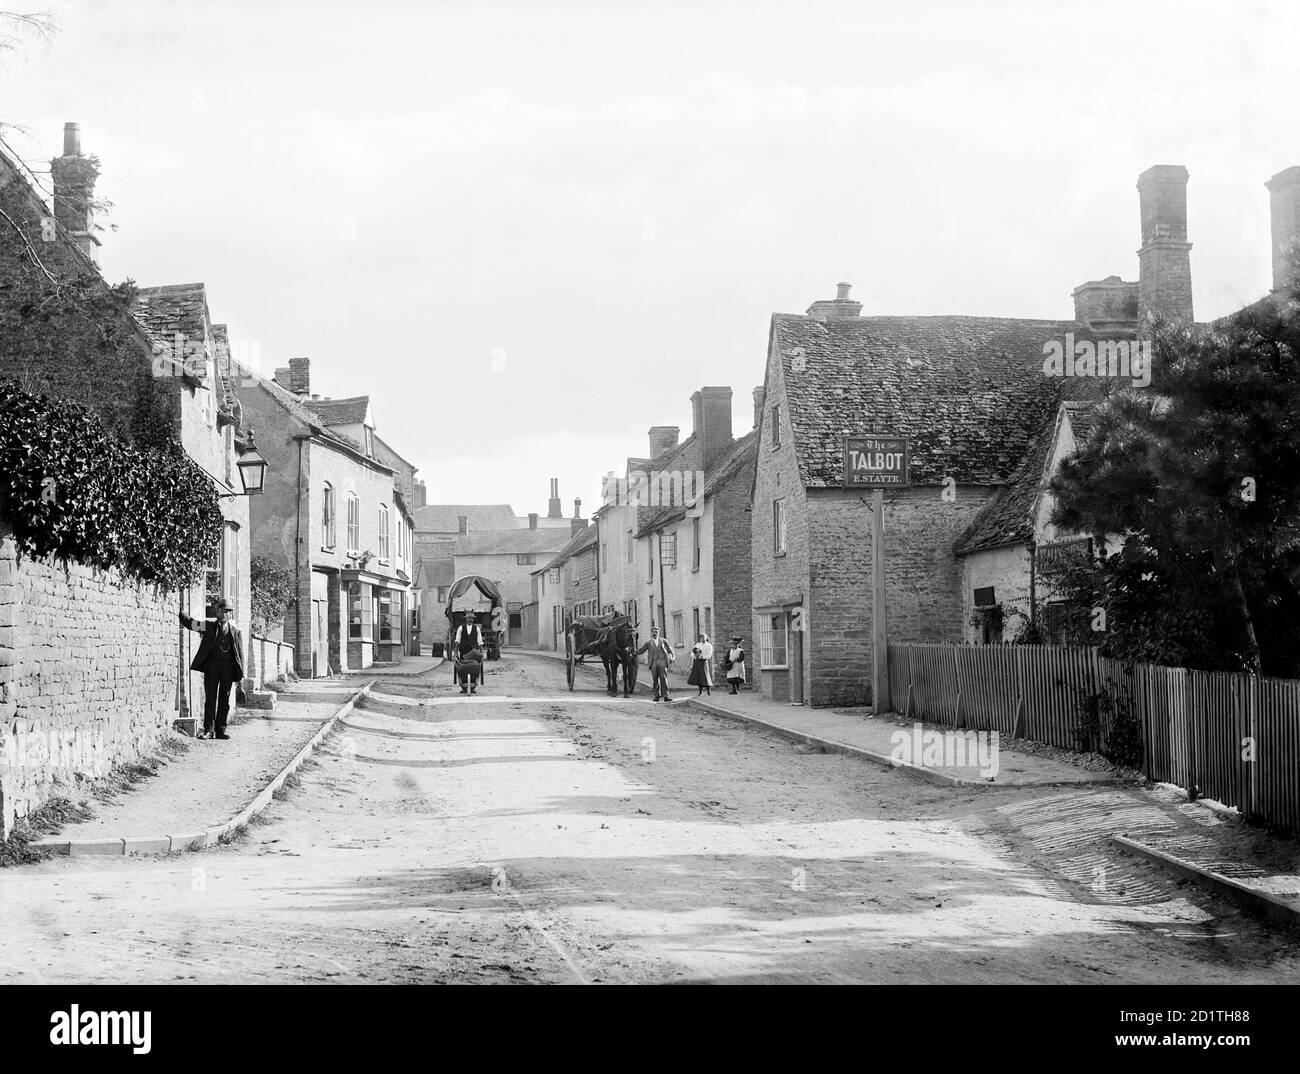 CHARLBURY, Oxfordshire. Una scena di strada che mostra Thames Street con diversi abitanti locali, uno con una carriola, in piedi vicino alla casa pubblica Talbot. Fotografato da Henry Taunt (attivo dal 1860 al 1922). Foto Stock